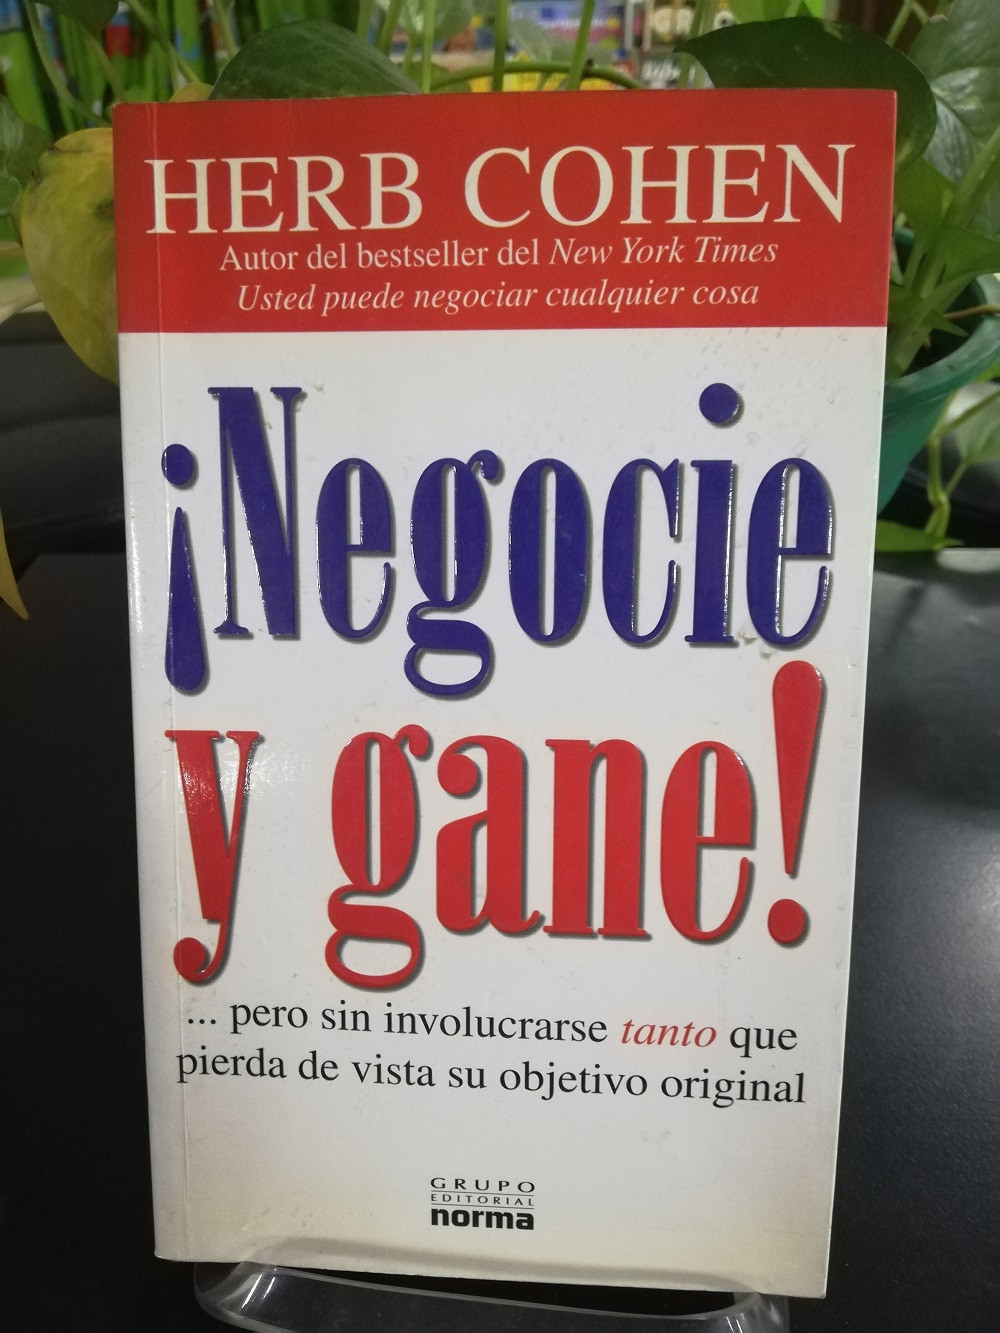 Imagen NEGOCIE Y GANE! - HERB COHEN 1